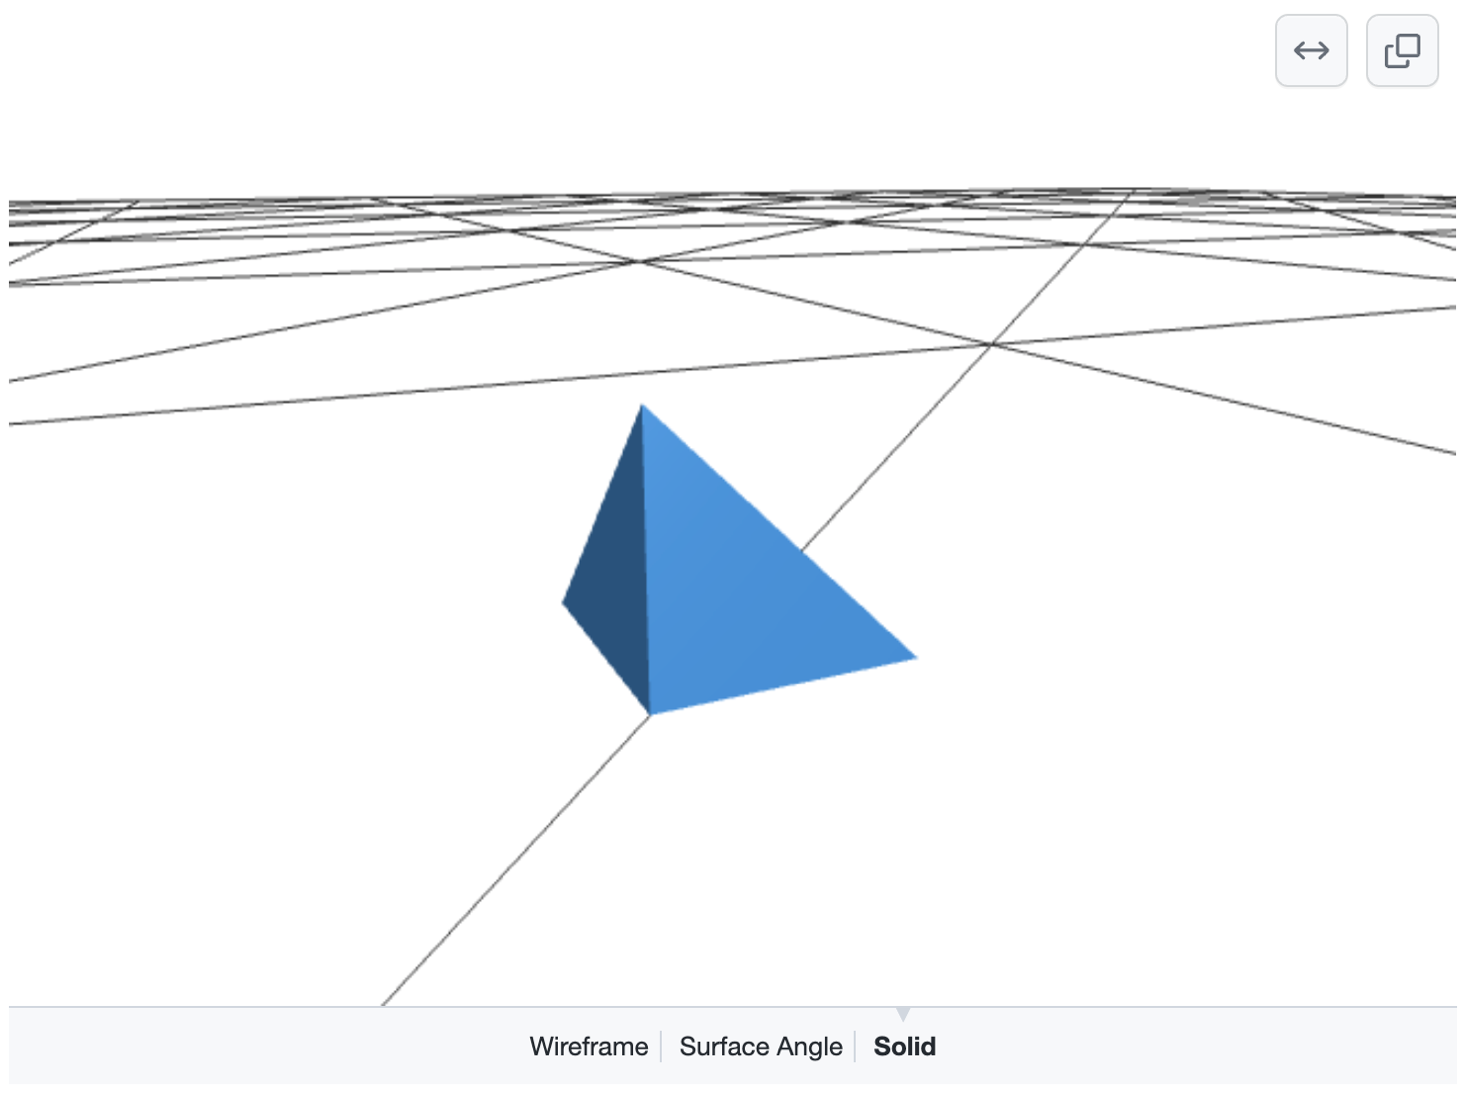 흰색 접지의 검은색 선 그리드 위에 파란색 피라미드를 보여주는 렌더링된 매니풀이 가능한 3D 모델의 스크린샷. "와이어프레임", "표면 각도" 또는 "단색"을 선택하는 옵션이 아래쪽에 나타납니다.